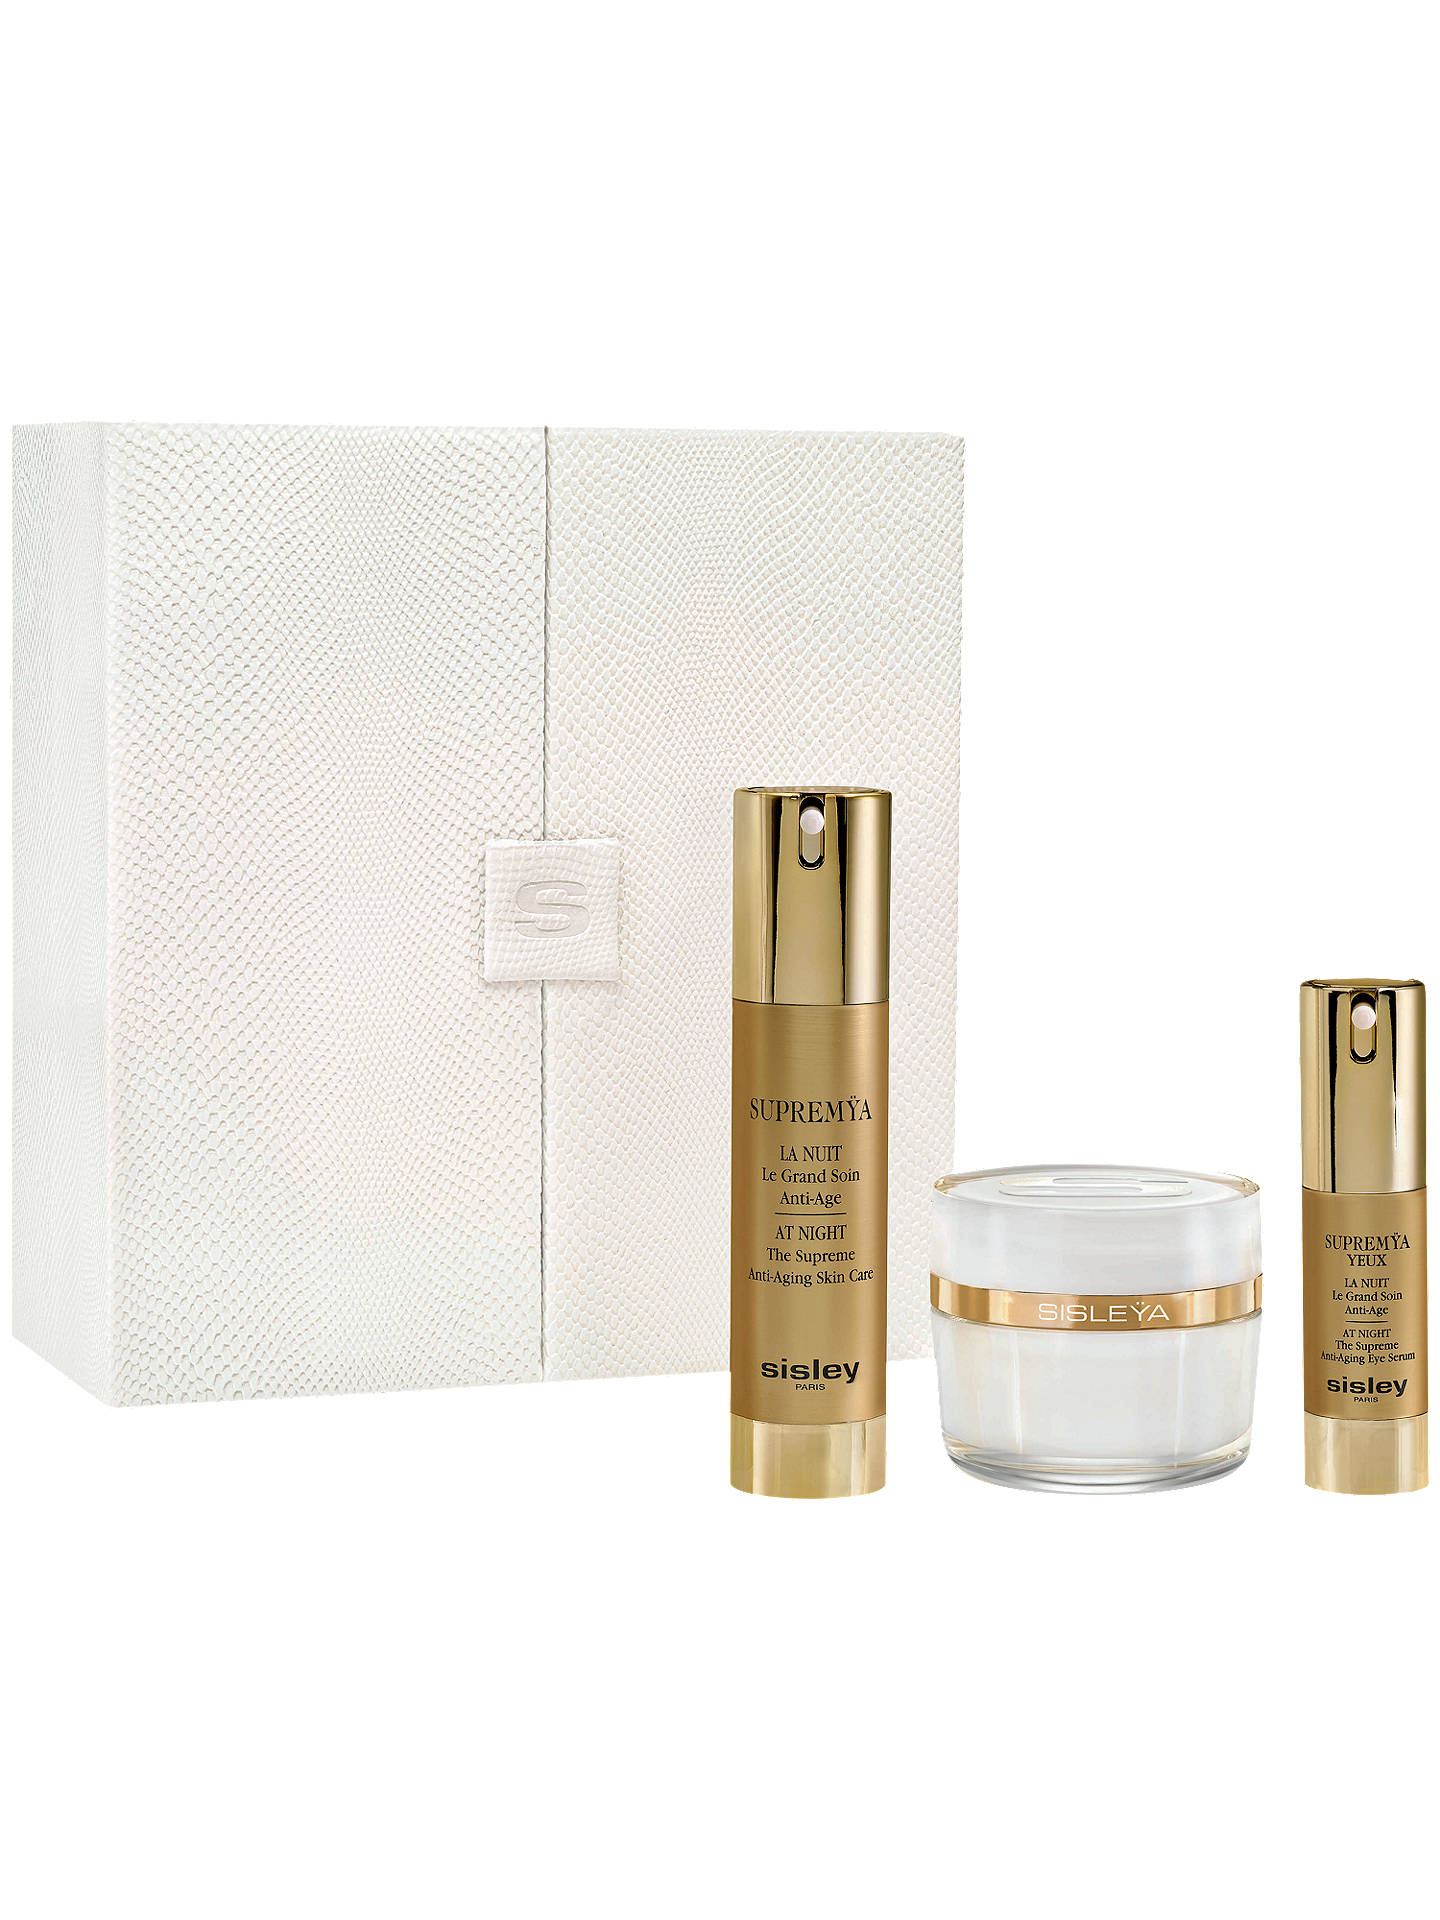 Sisley Prestigious Anti-Ageing Skincare Gift Set at John Lewis & Partners